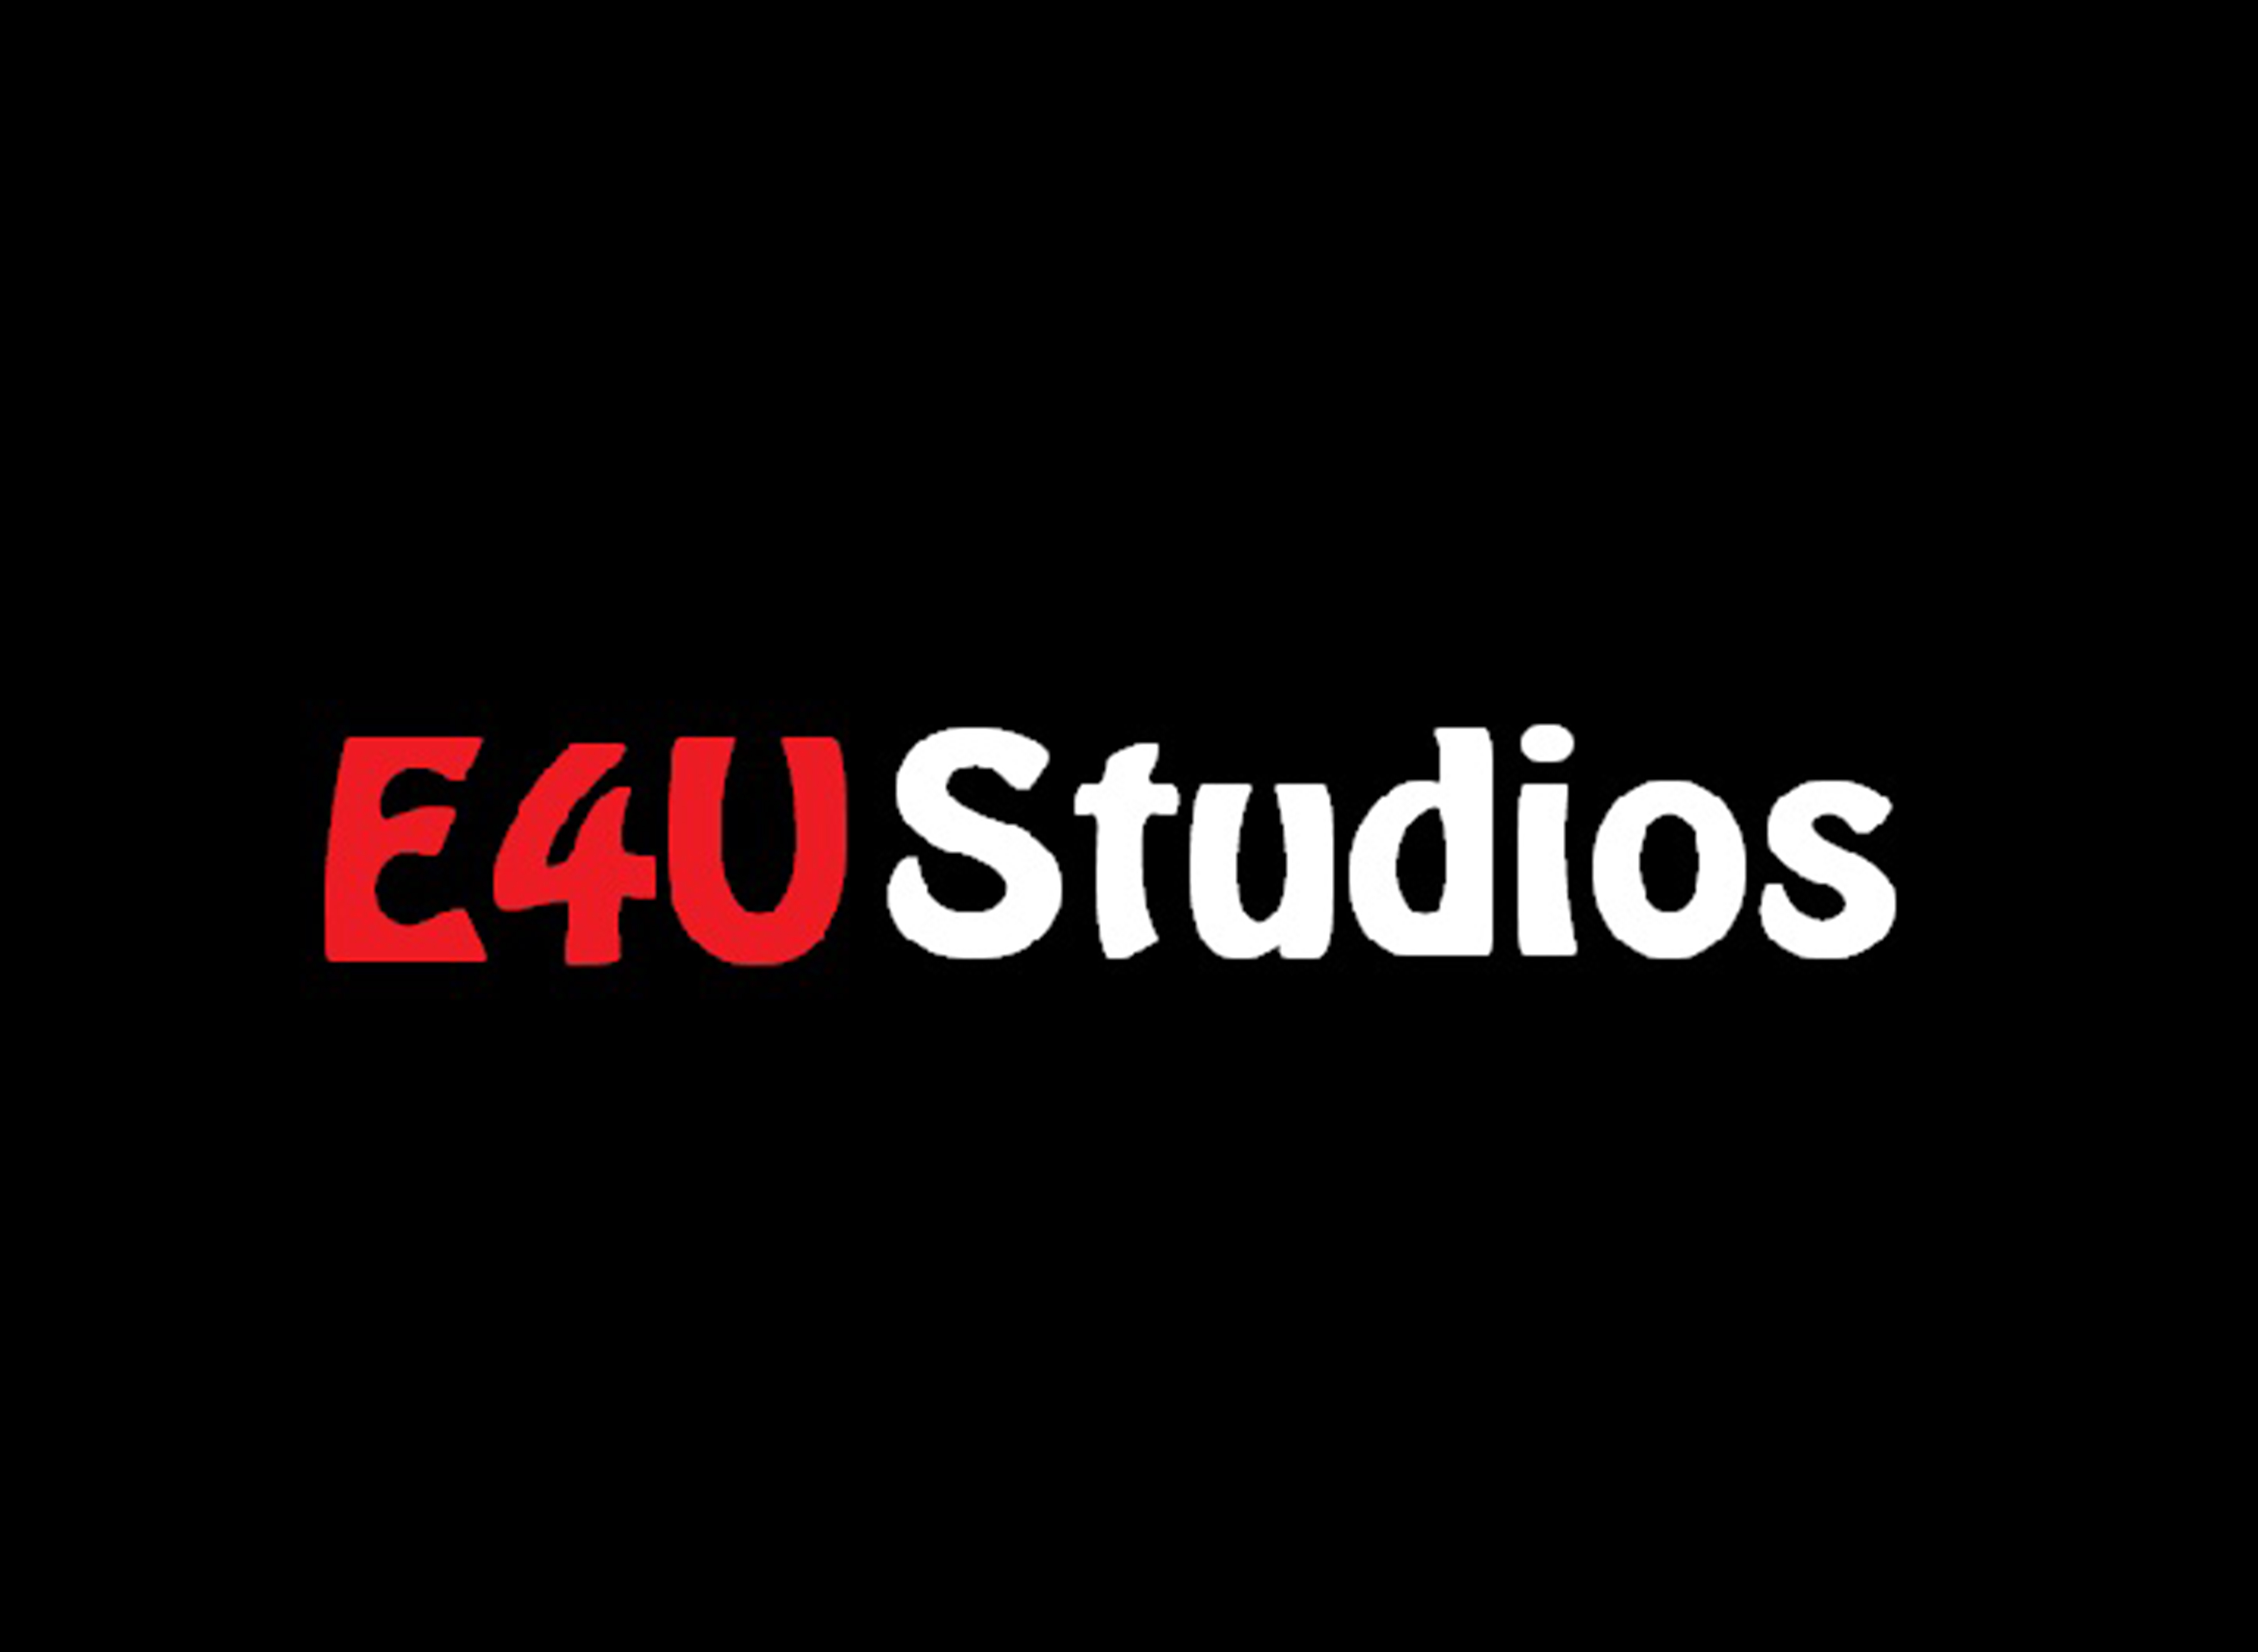 E4U Studios Pakistan